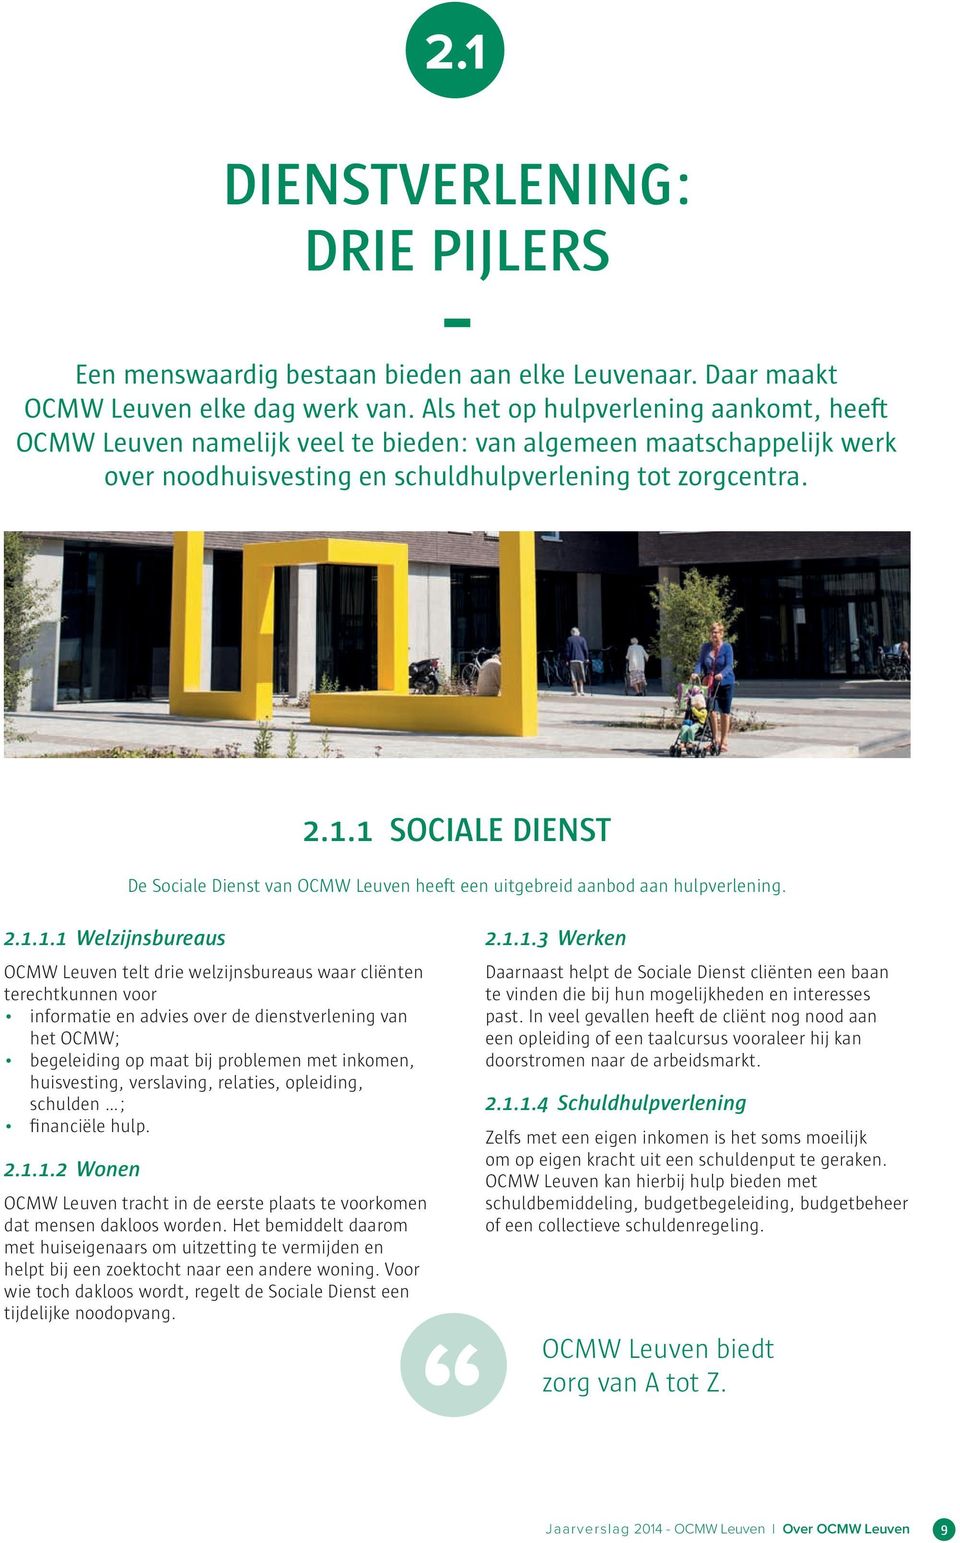 1 SOCIALE DIENST De Sociale Dienst van OCMW Leuven heeft een uitgebreid aanbod aan hulpverlening. 2.1.1.1 Welzijnsbureaus OCMW Leuven telt drie welzijnsbureaus waar cliënten terechtkunnen voor